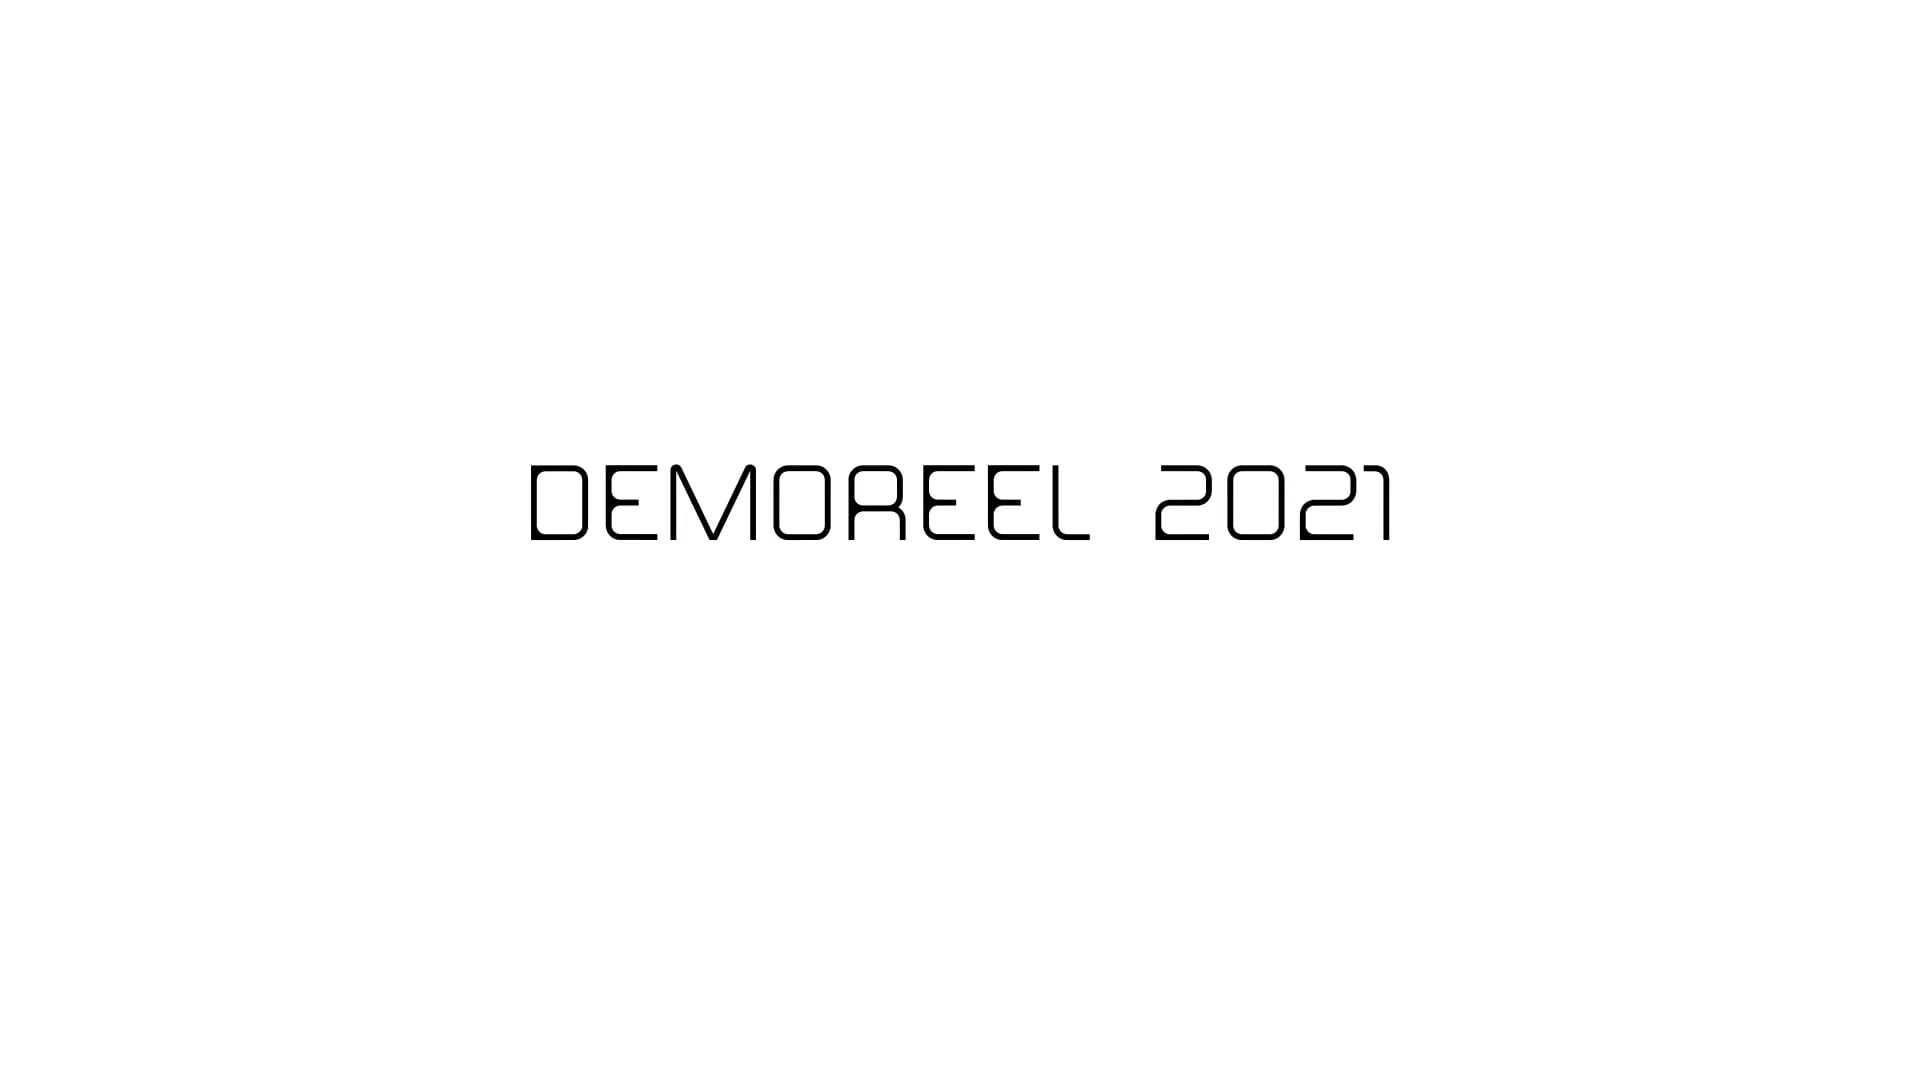 PYRALIS DEMOREEL 2021